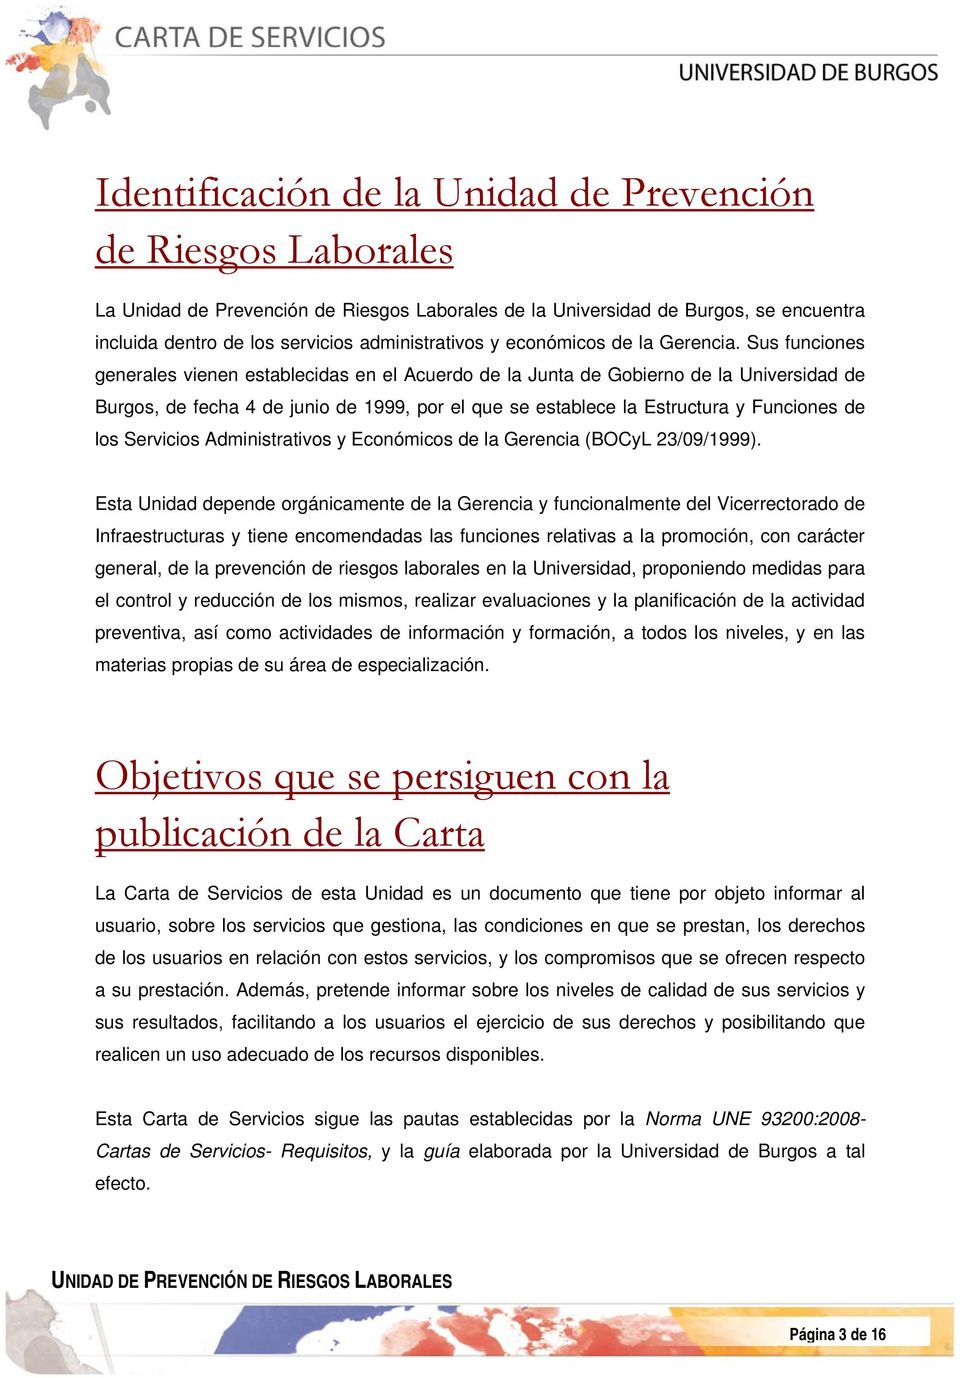 Sus funciones generales vienen establecidas en el Acuerdo de la Junta de Gobierno de la Universidad de Burgos, de fecha 4 de junio de 1999, por el que se establece la Estructura y Funciones de los